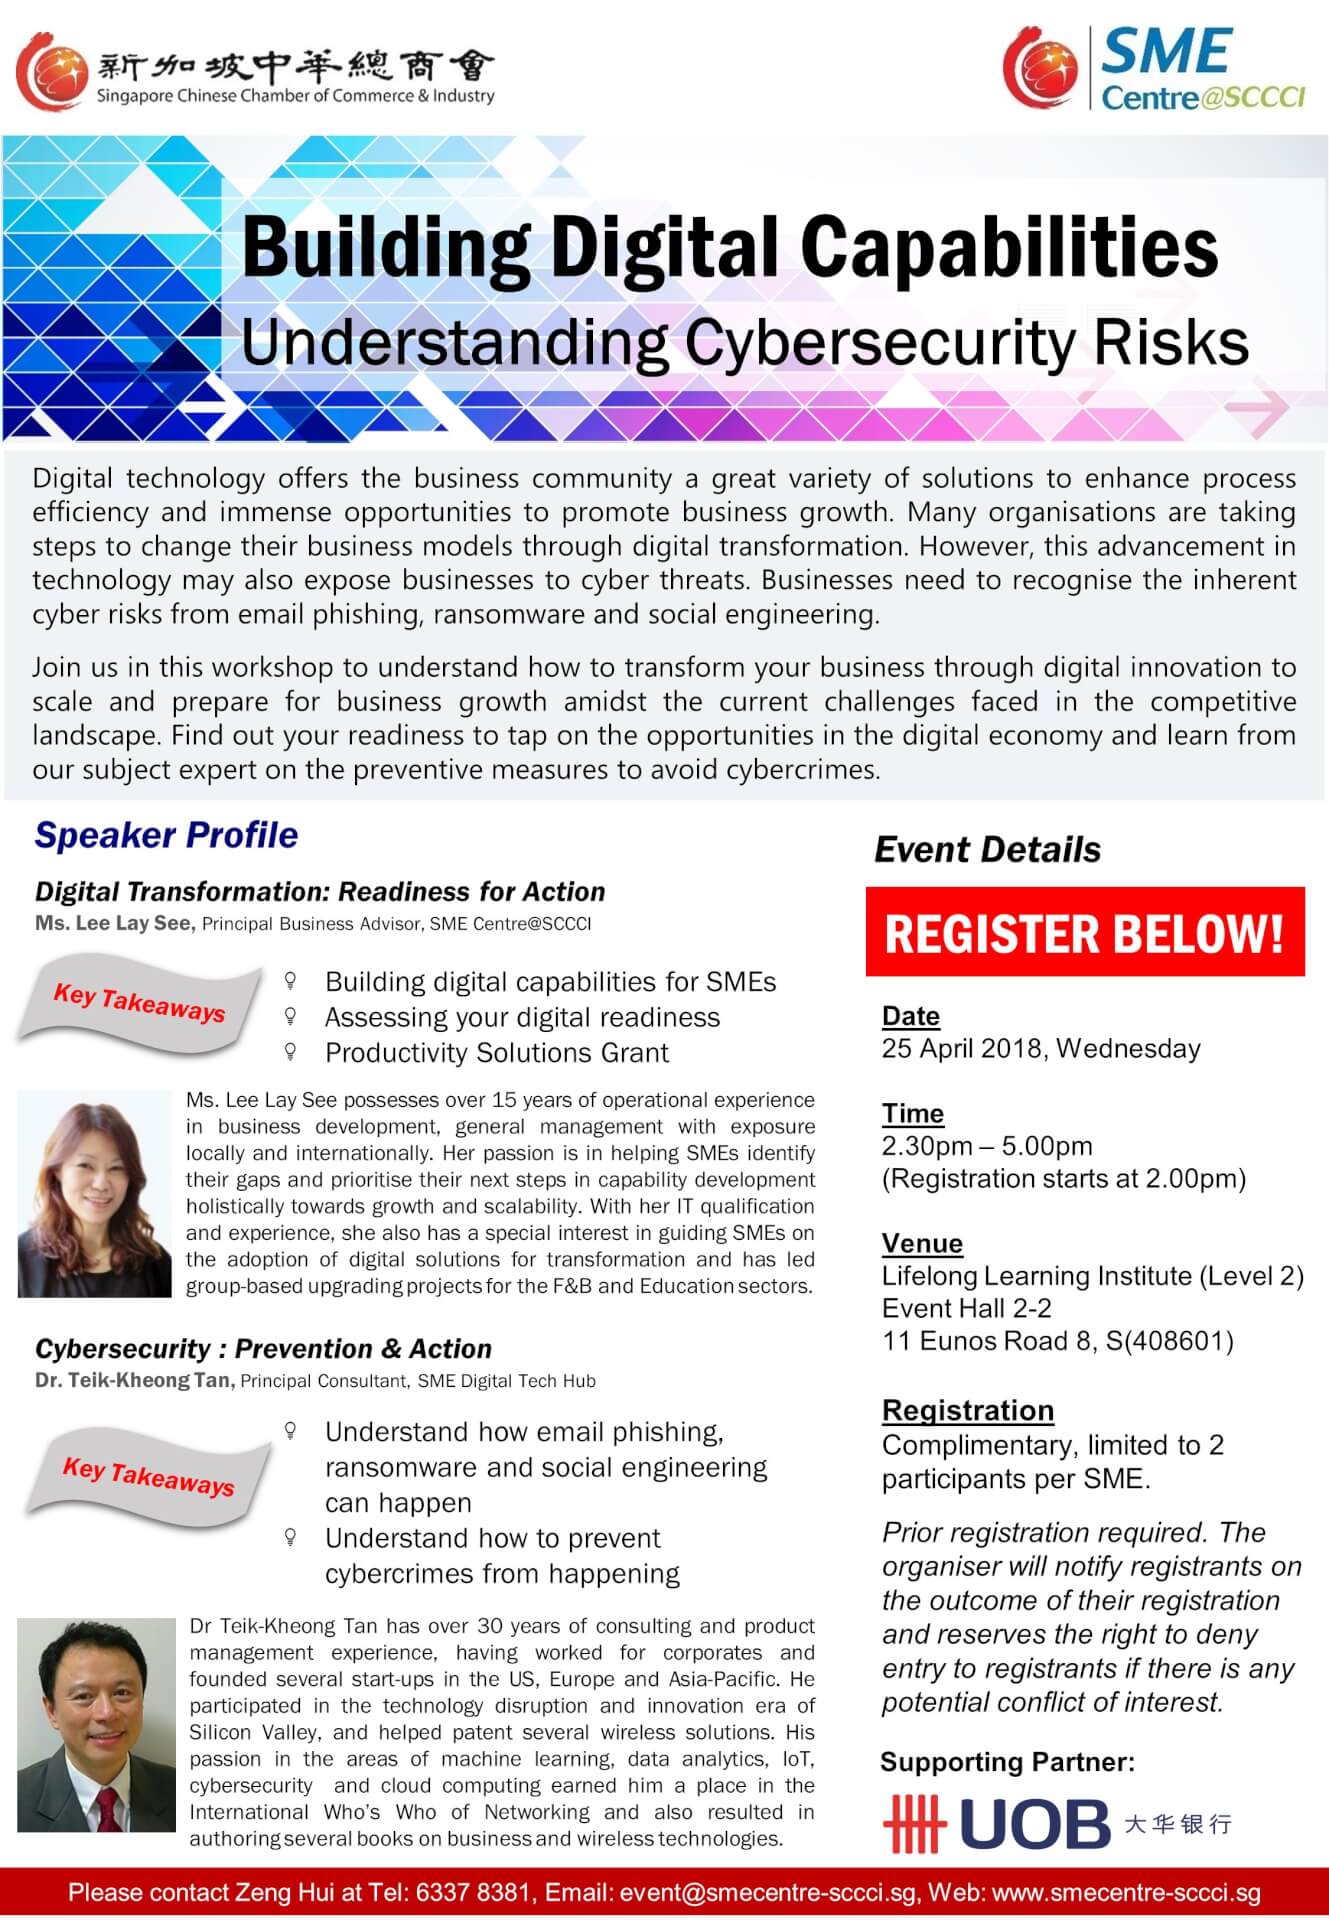 Digital Cybersecurity Workshop